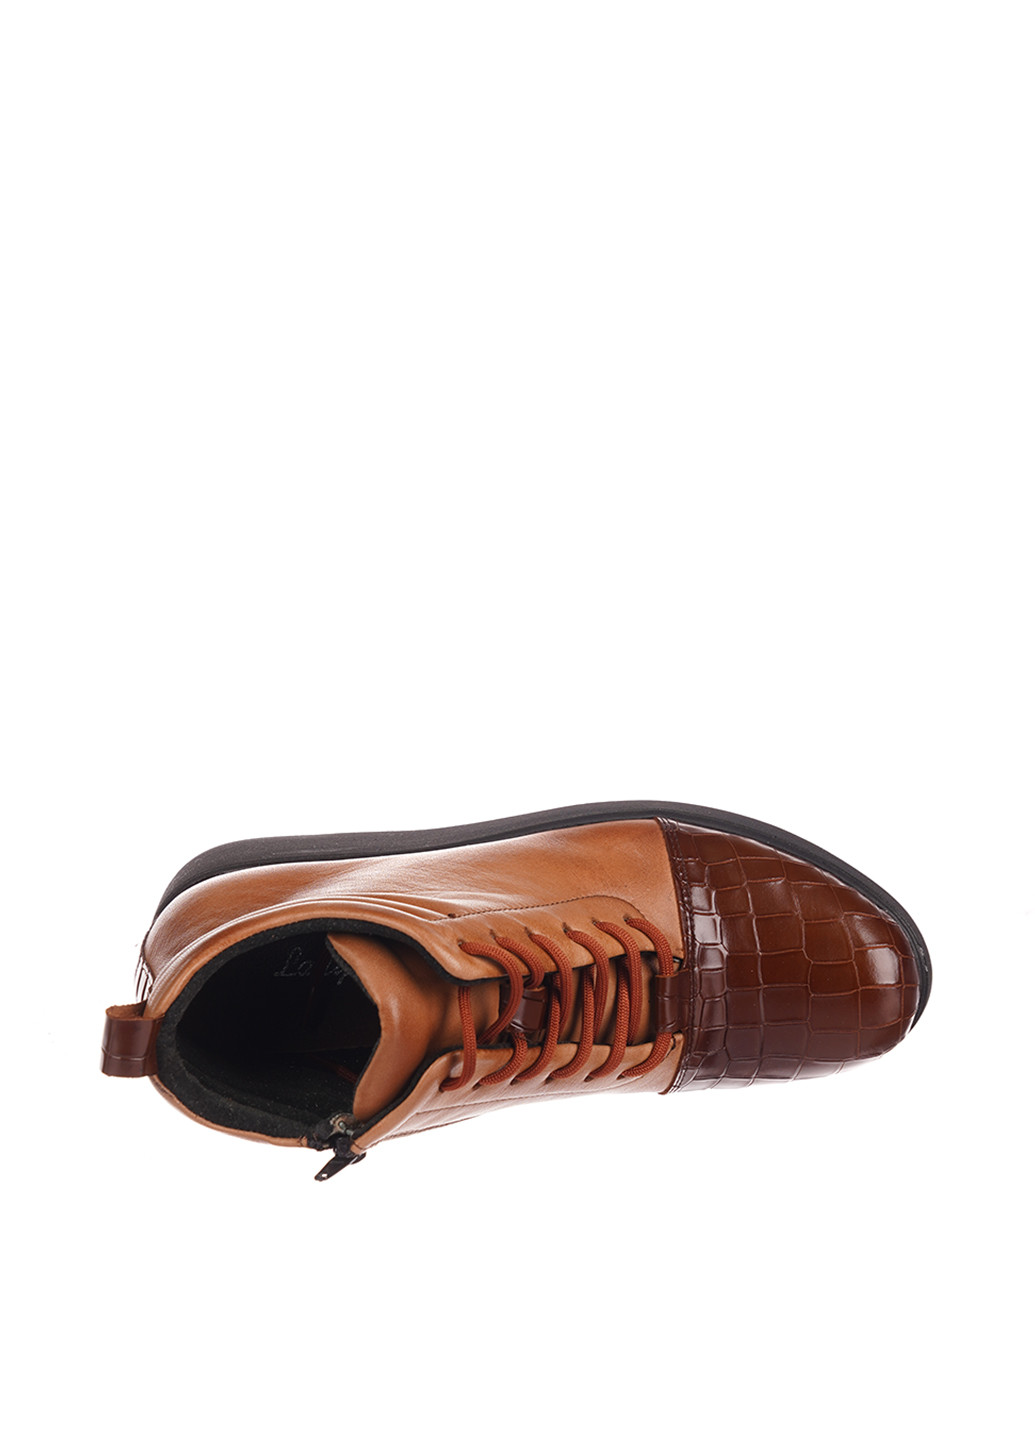 Осенние ботинки Goover со шнуровкой, с тиснением